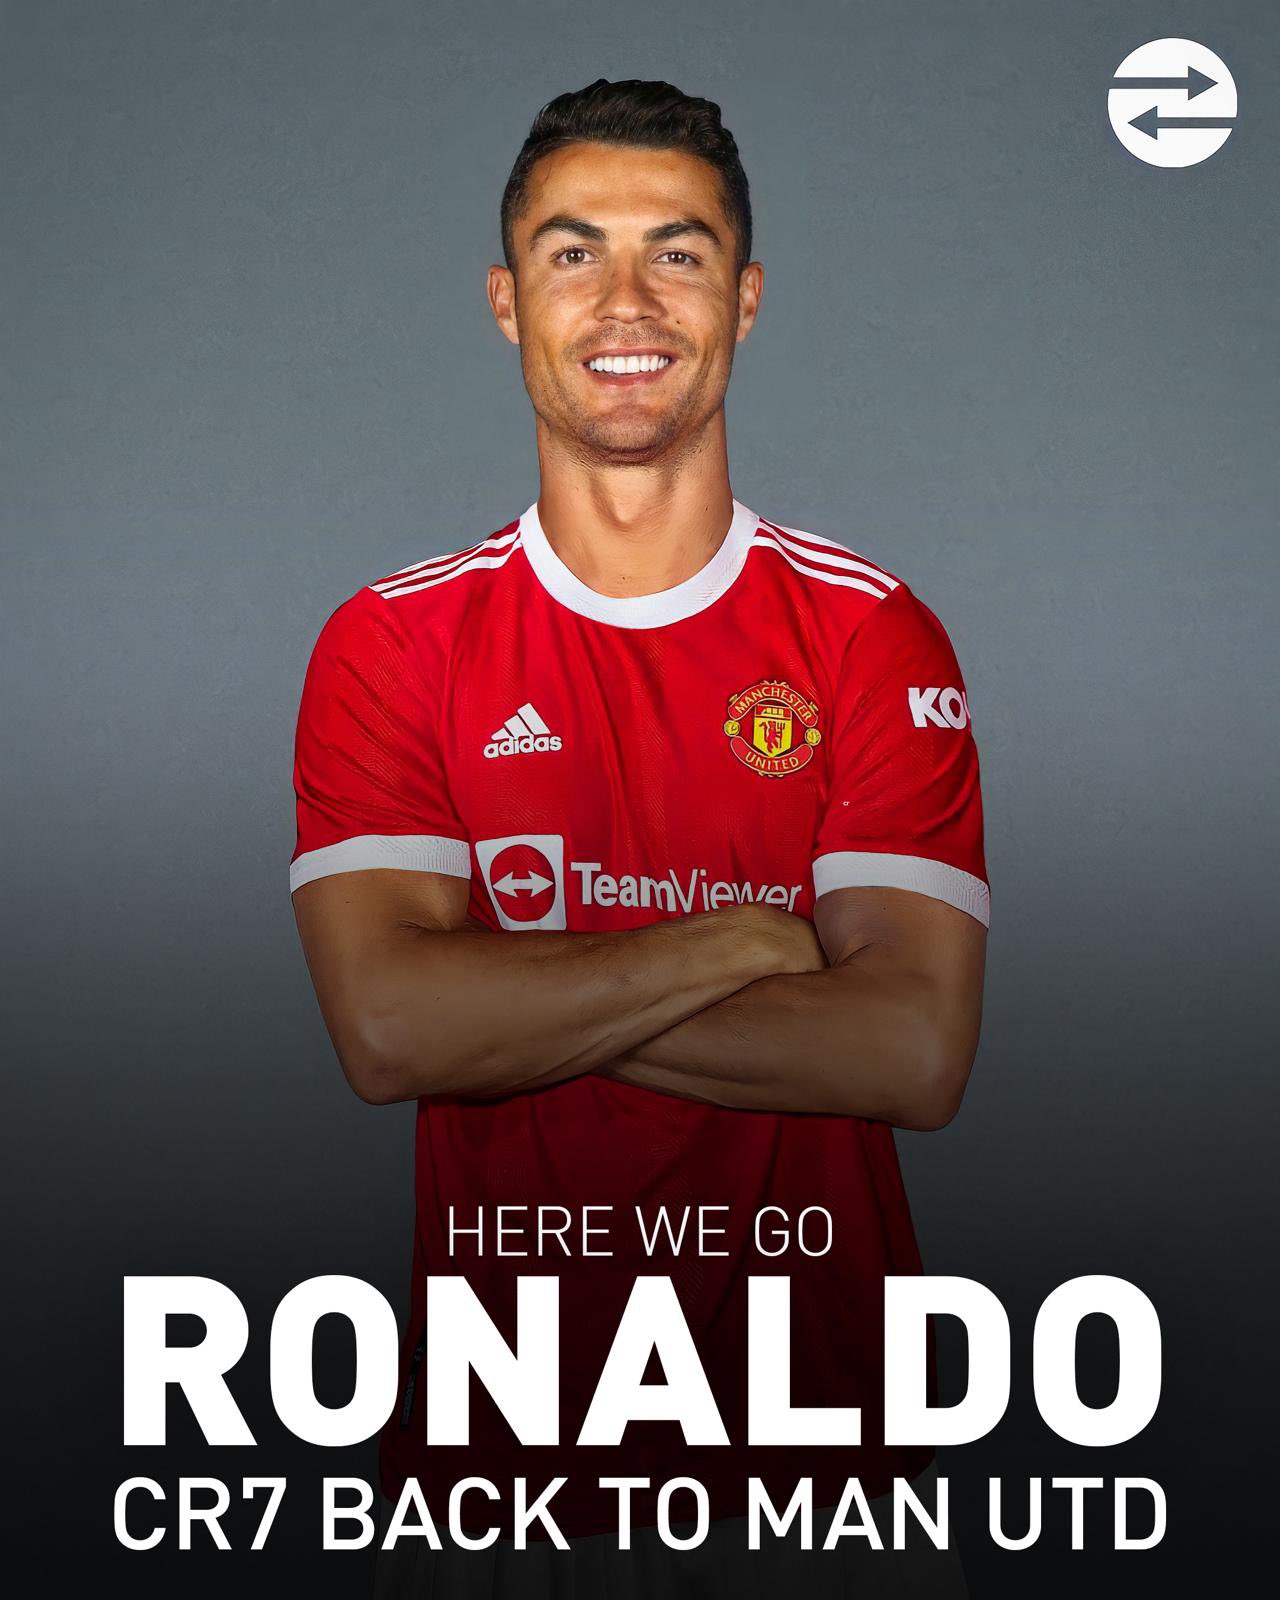 Cristiano Ronaldo Manchester United 2021 wallpaper